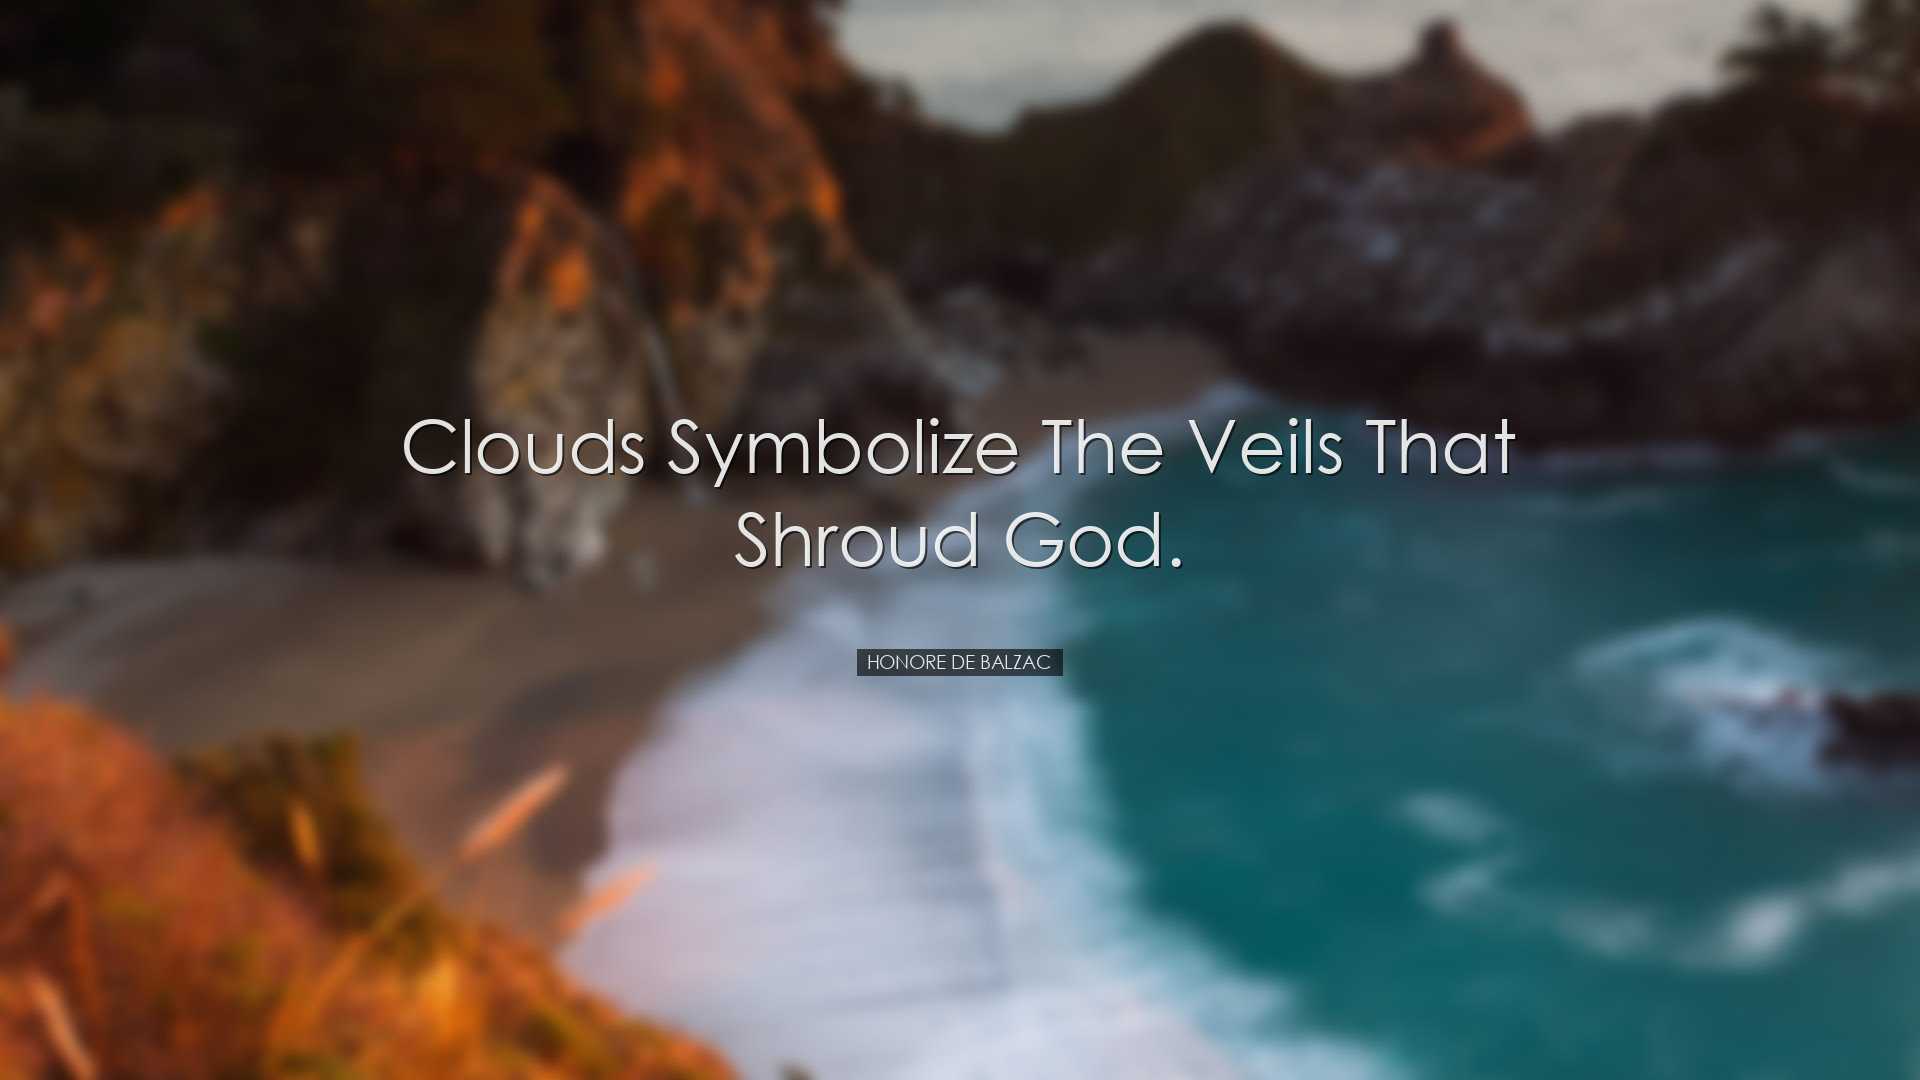 Clouds symbolize the veils that shroud God. - Honore de Balzac